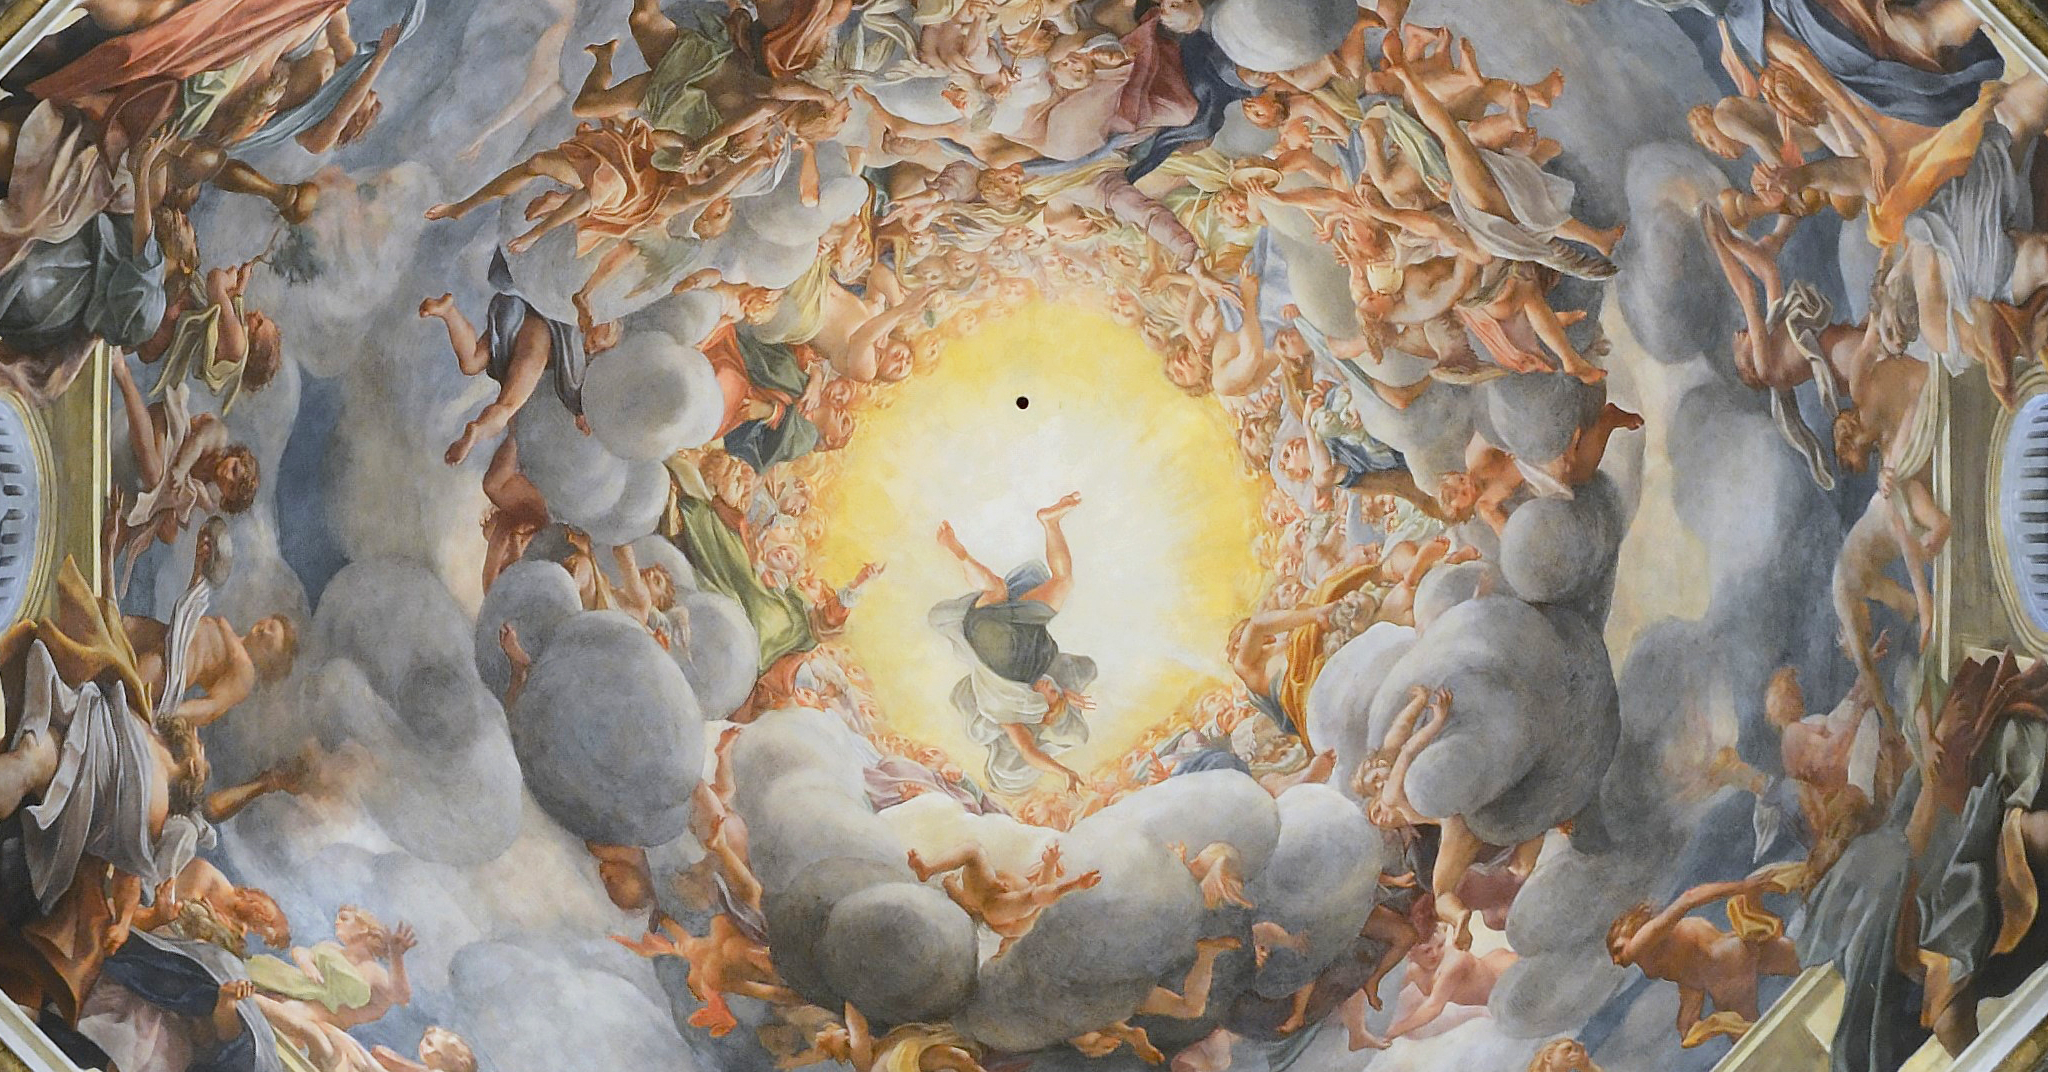 Cathedral Parma - Assumption by Correggio